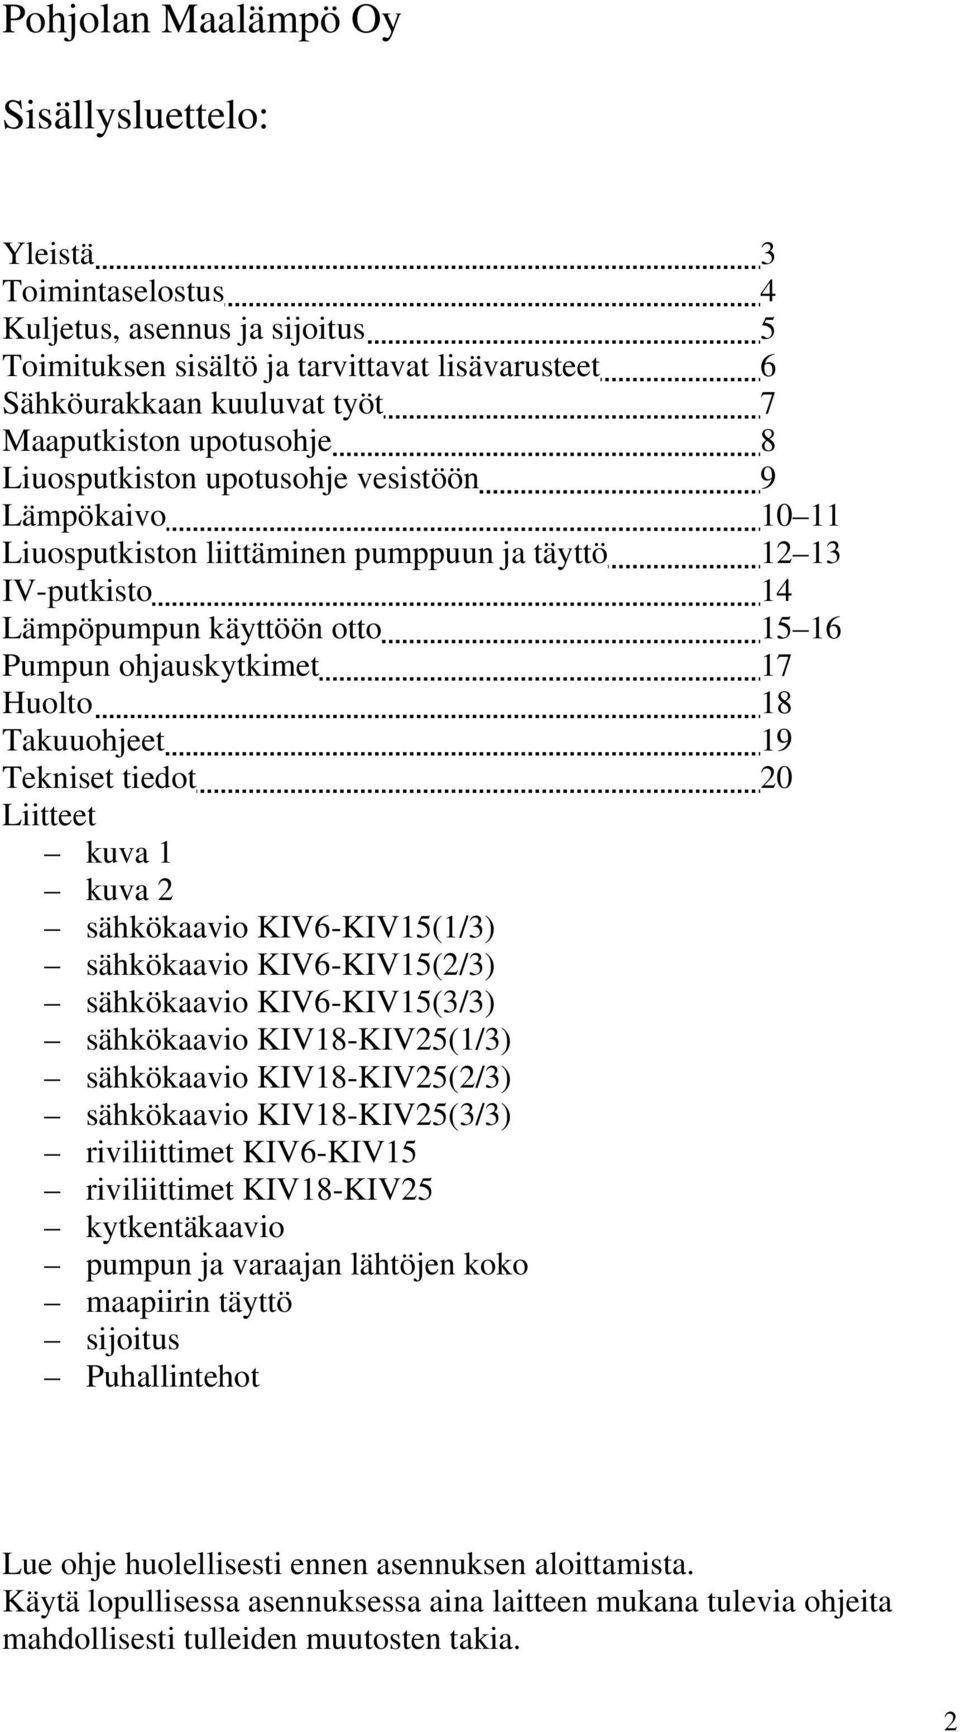 18 Takuuohjeet 19 Tekniset tiedot 20 Liitteet kuva 1 kuva 2 sähkökaavio KIV6-KIV15(1/3) sähkökaavio KIV6-KIV15(2/3) sähkökaavio KIV6-KIV15(3/3) sähkökaavio KIV18-KIV25(1/3) sähkökaavio